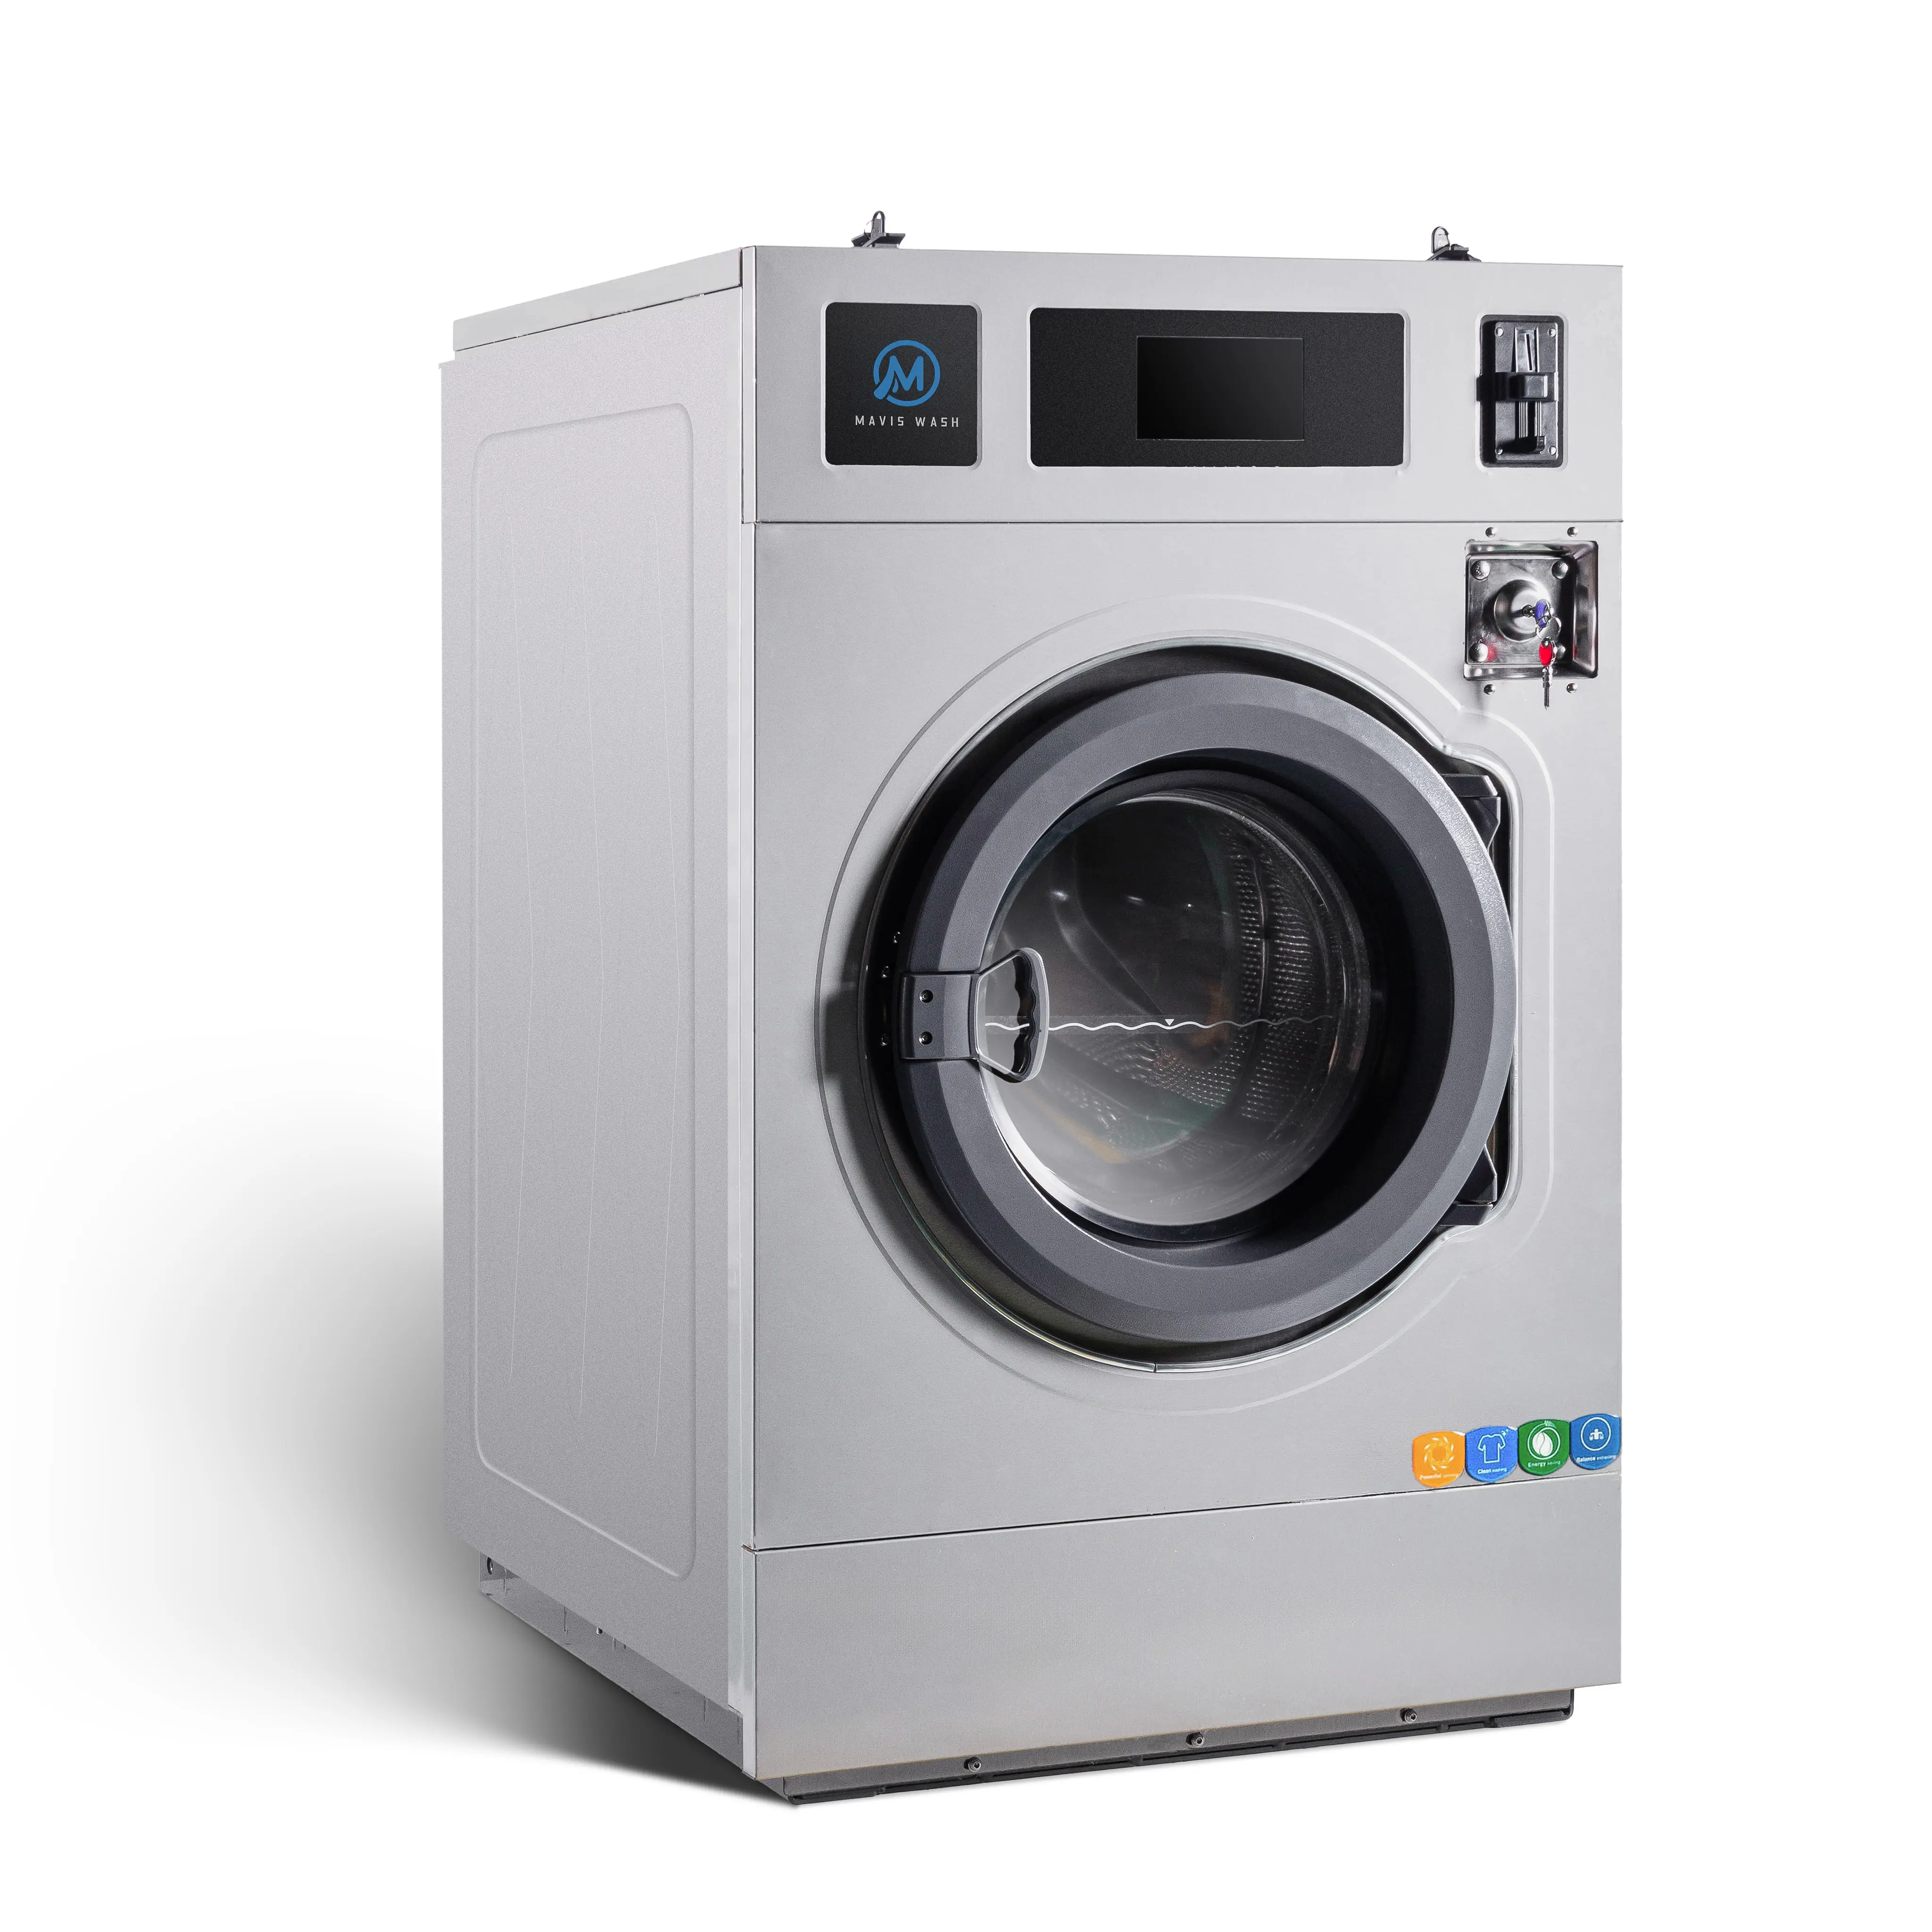 Ticari çamaşır yıkama ekipmanları 12 kg jetonla çalışan çamaşır makinesi